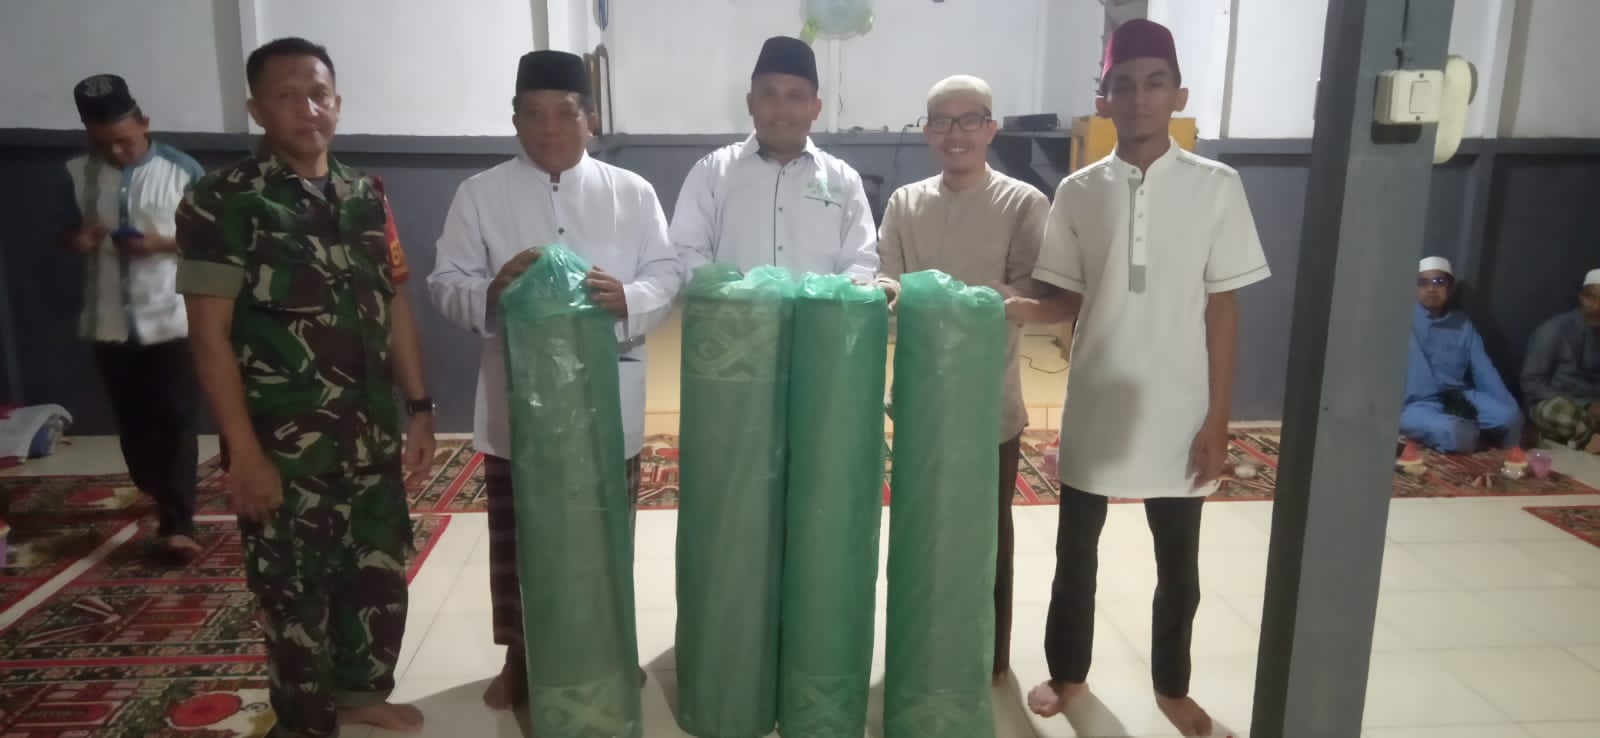 Manajemen PT Lestari Abadi Perkasa menyerahkan 4 gulung sajadah kepada pengurus Surau At-Takwa Desa Pebihingan. (Foto: Adi LC)